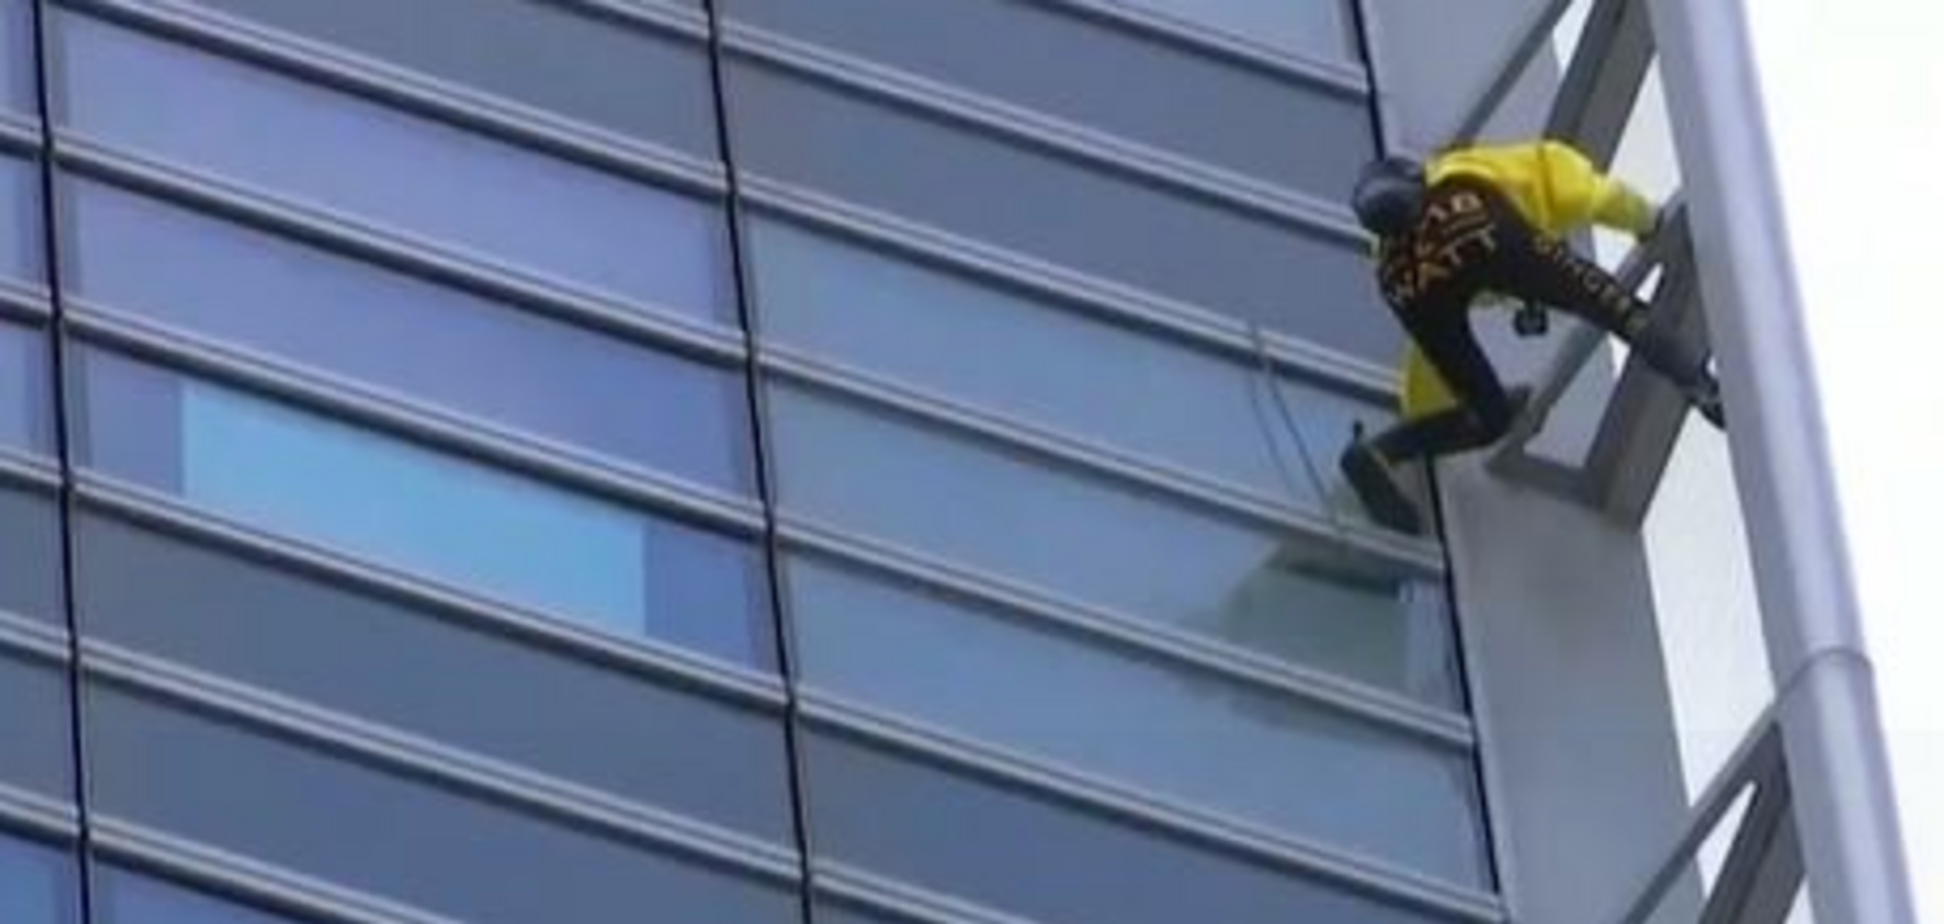 Французький ''Людина-павук'' підкорив хмарочос у Парижі: захопливі фото і відео